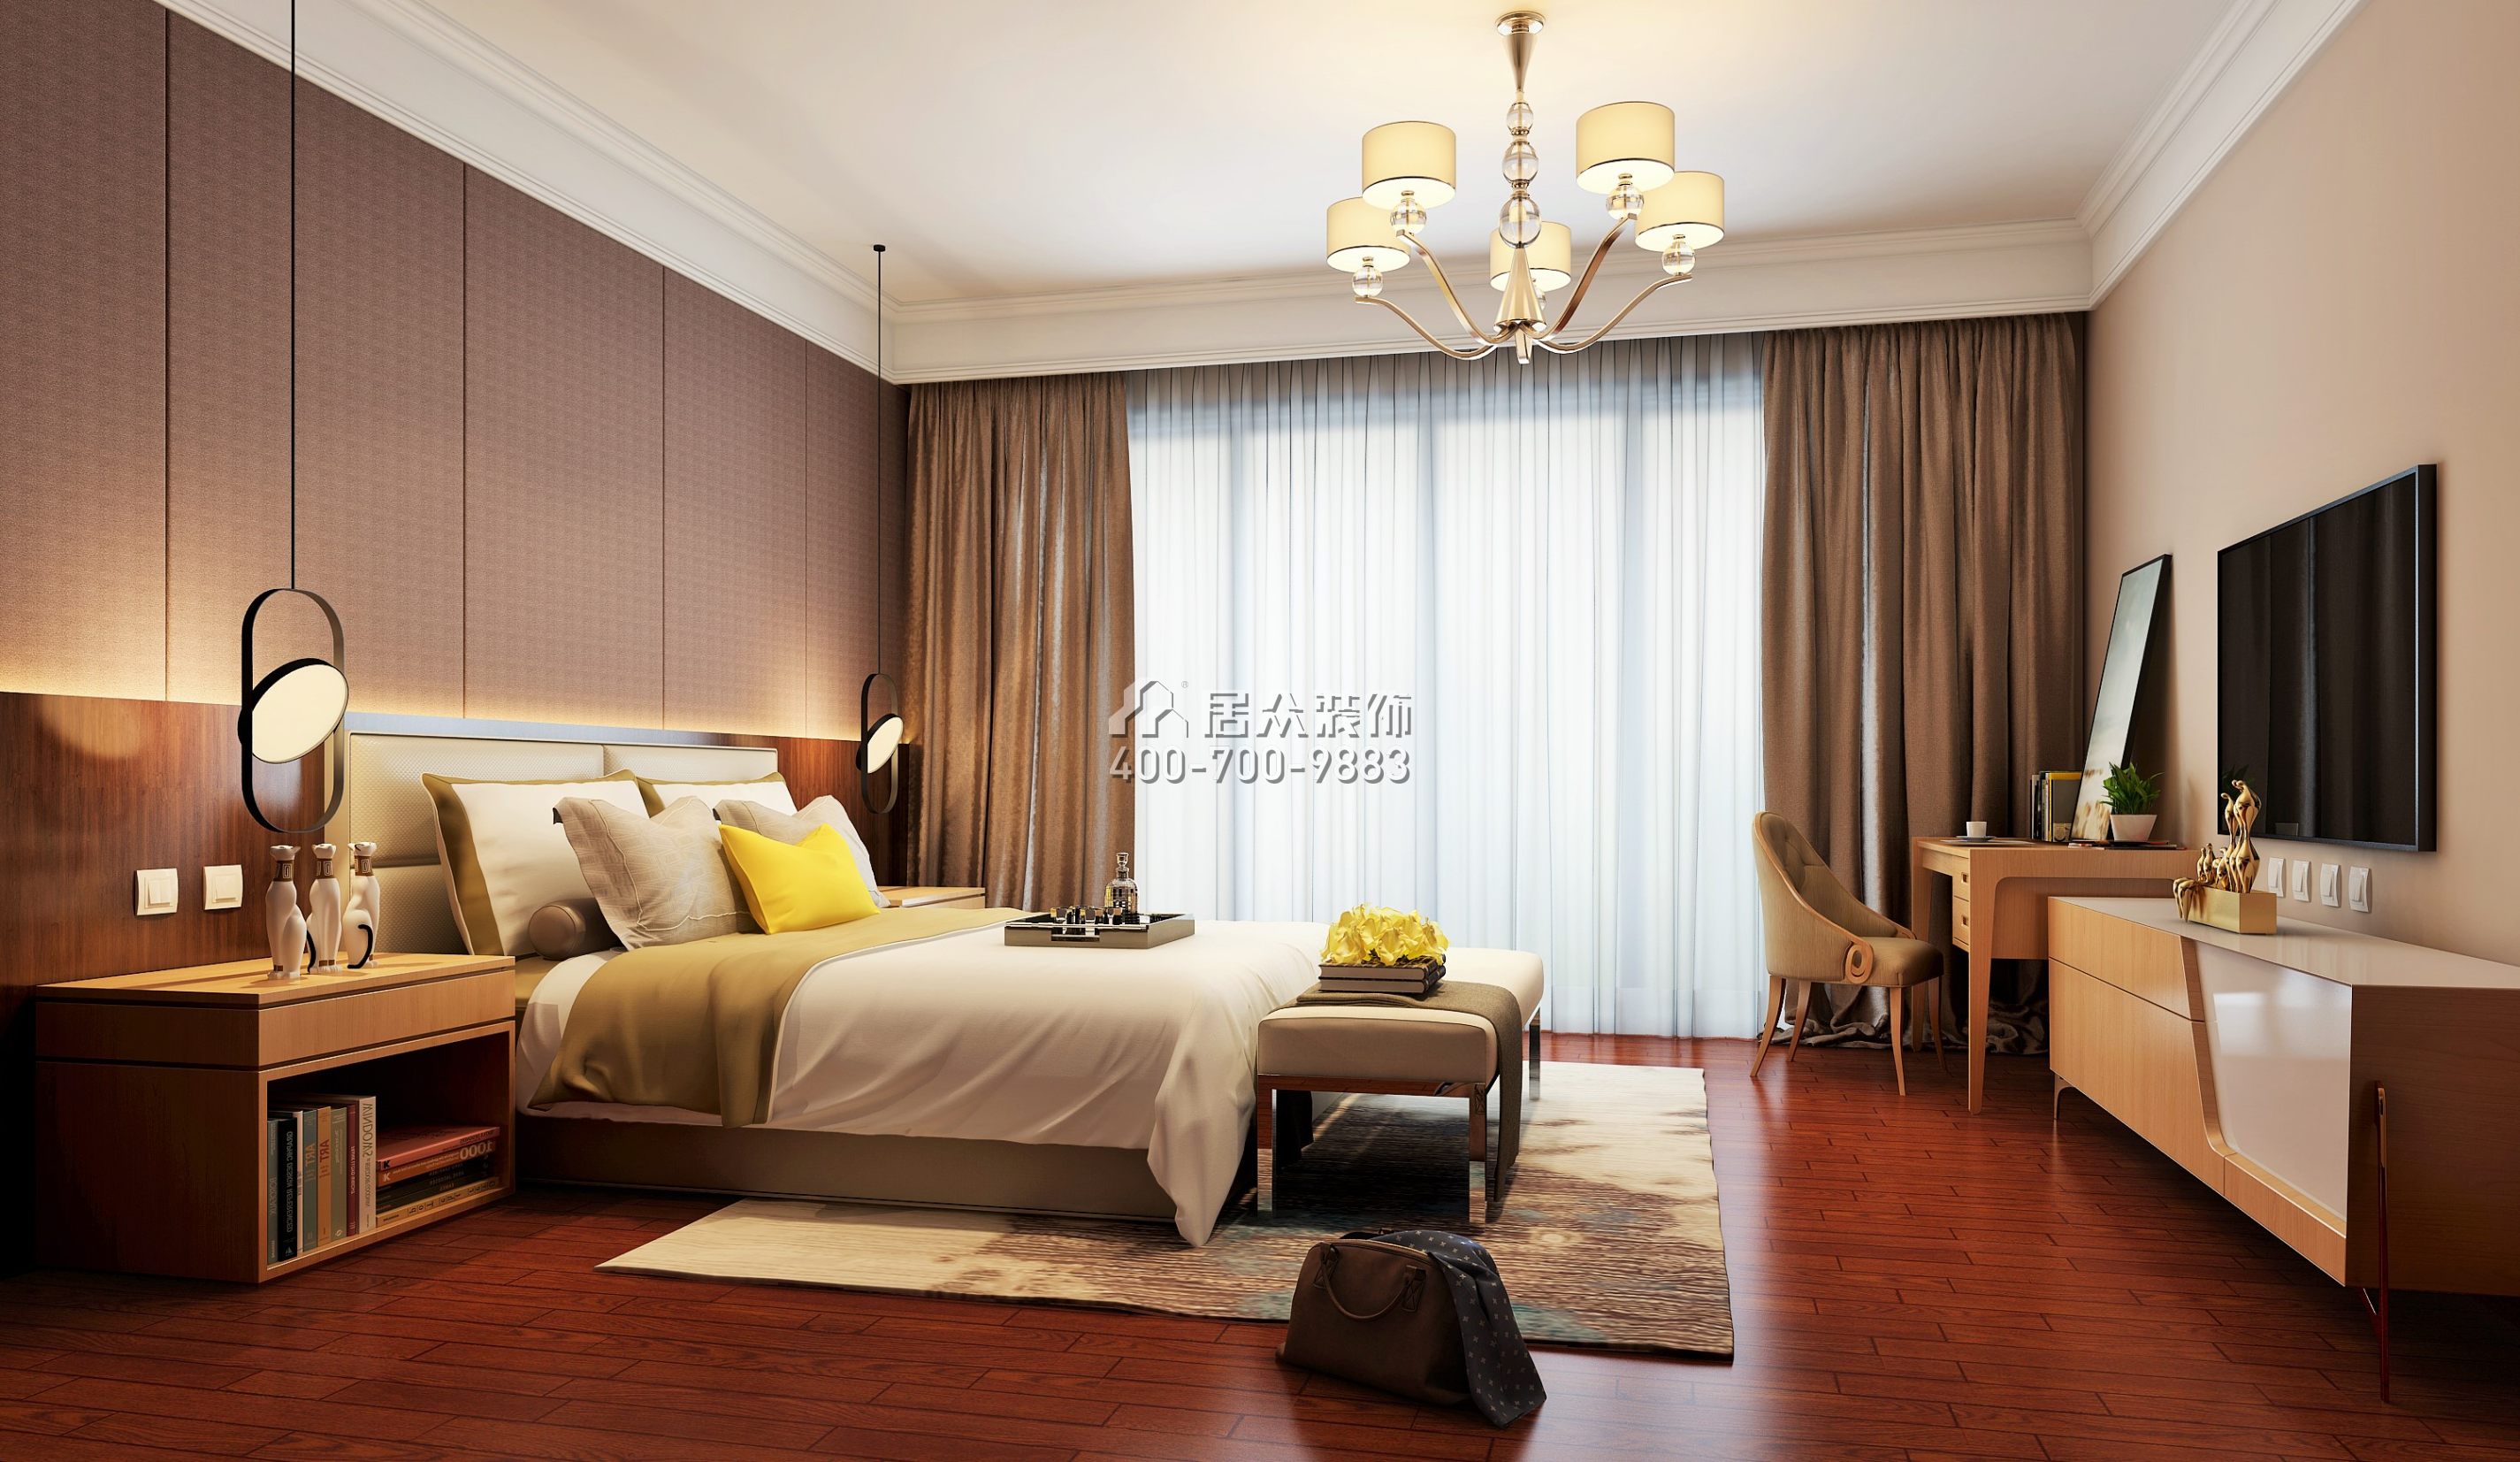 海逸豪庭170平方米中式风格别墅户型卧室装修效果图